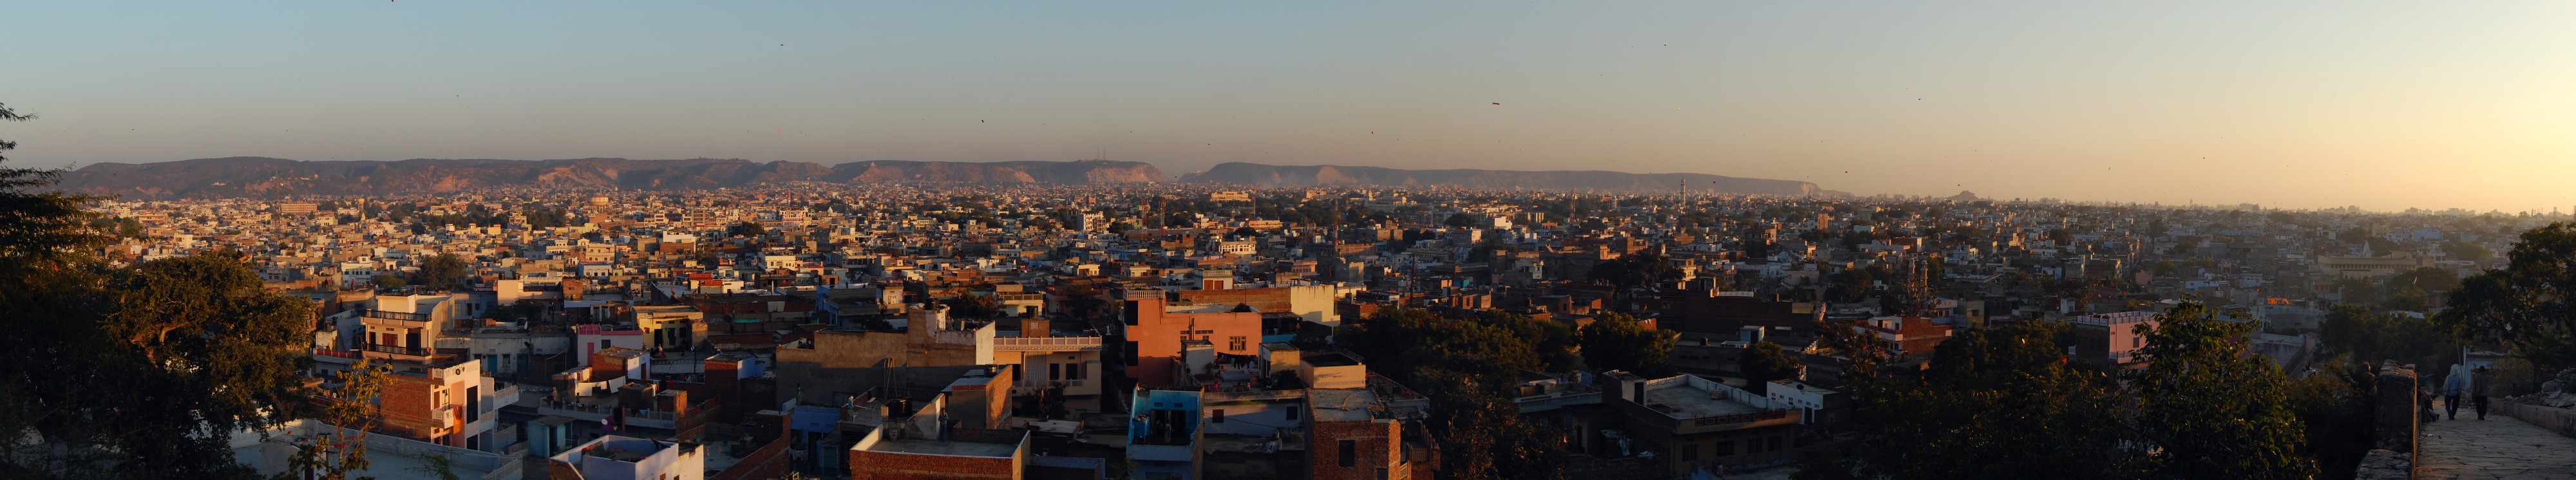 Jaipur evening kites 2011